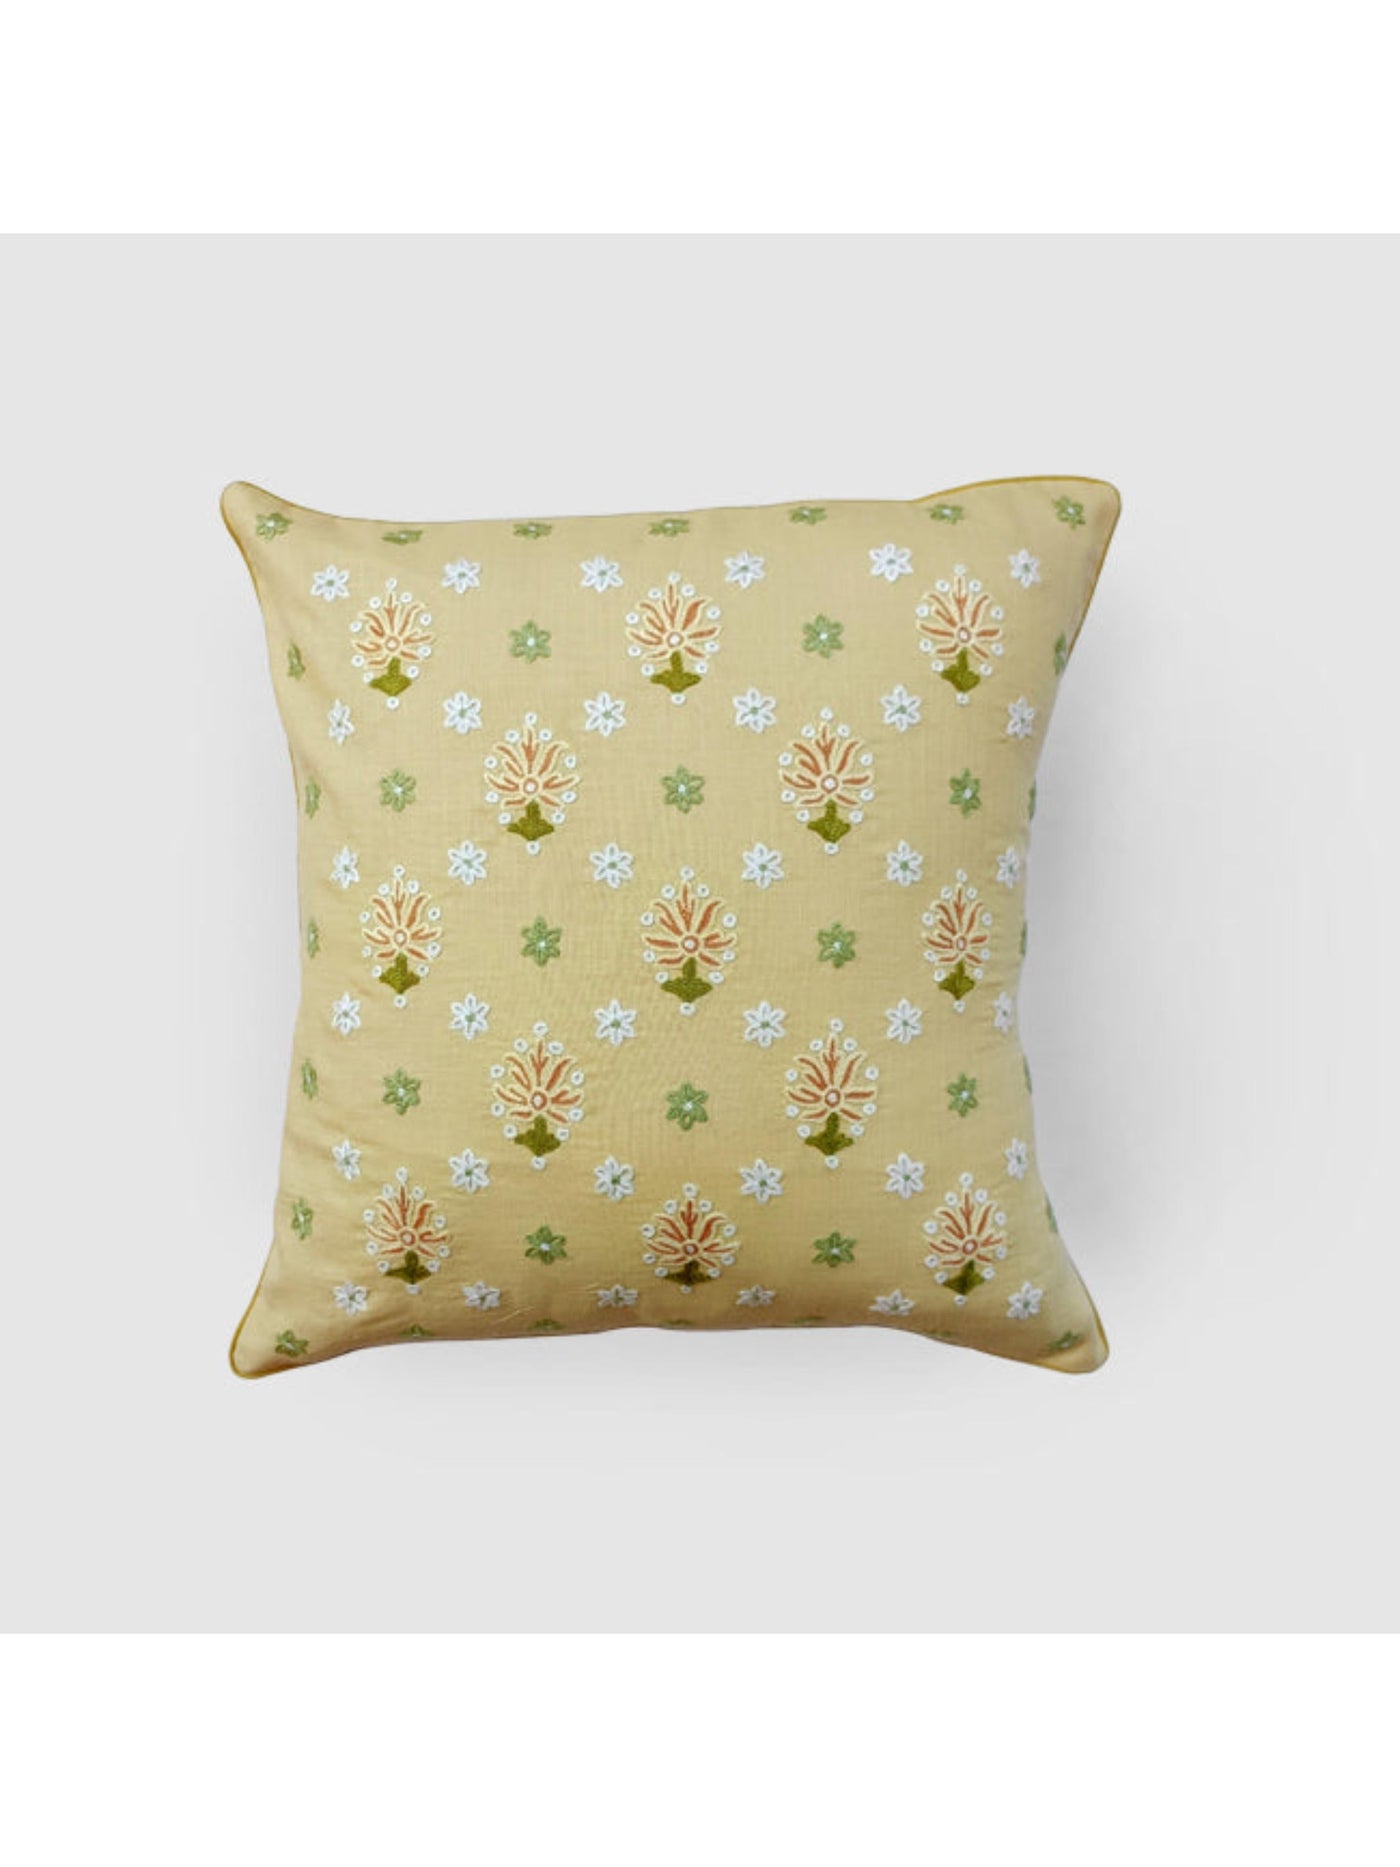 Cushion Cover - Gul Nilofer Aari Embroidered - Beige